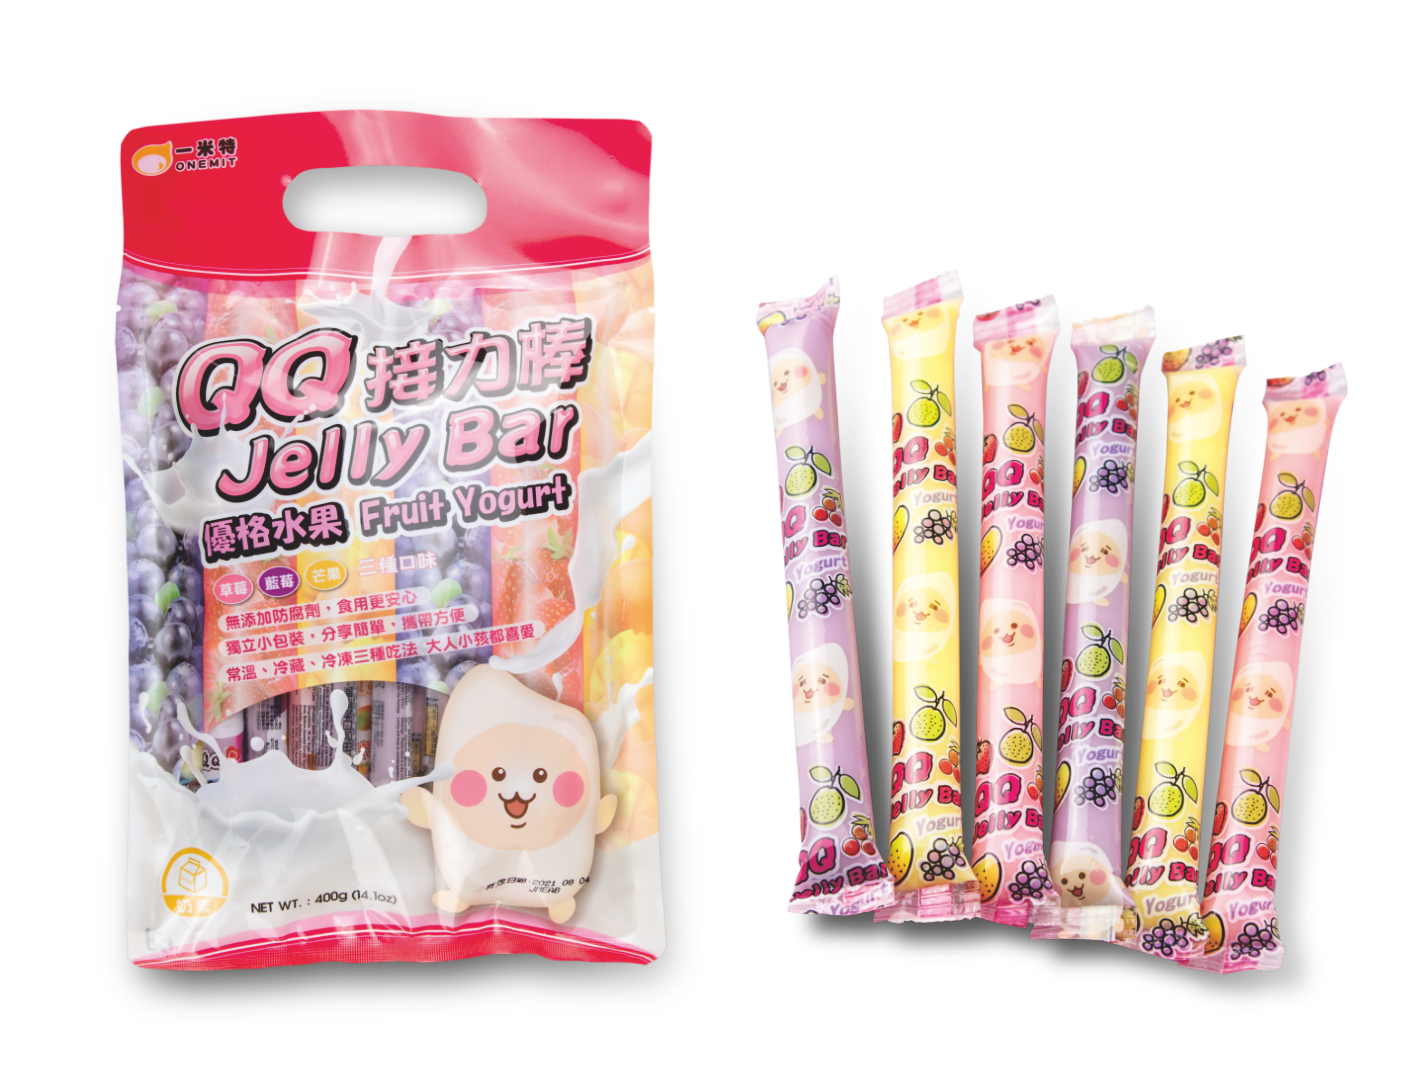 優格QQ果凍條<br>Yoghurt QQ Jelly Bar  |產品資訊|果凍/布丁